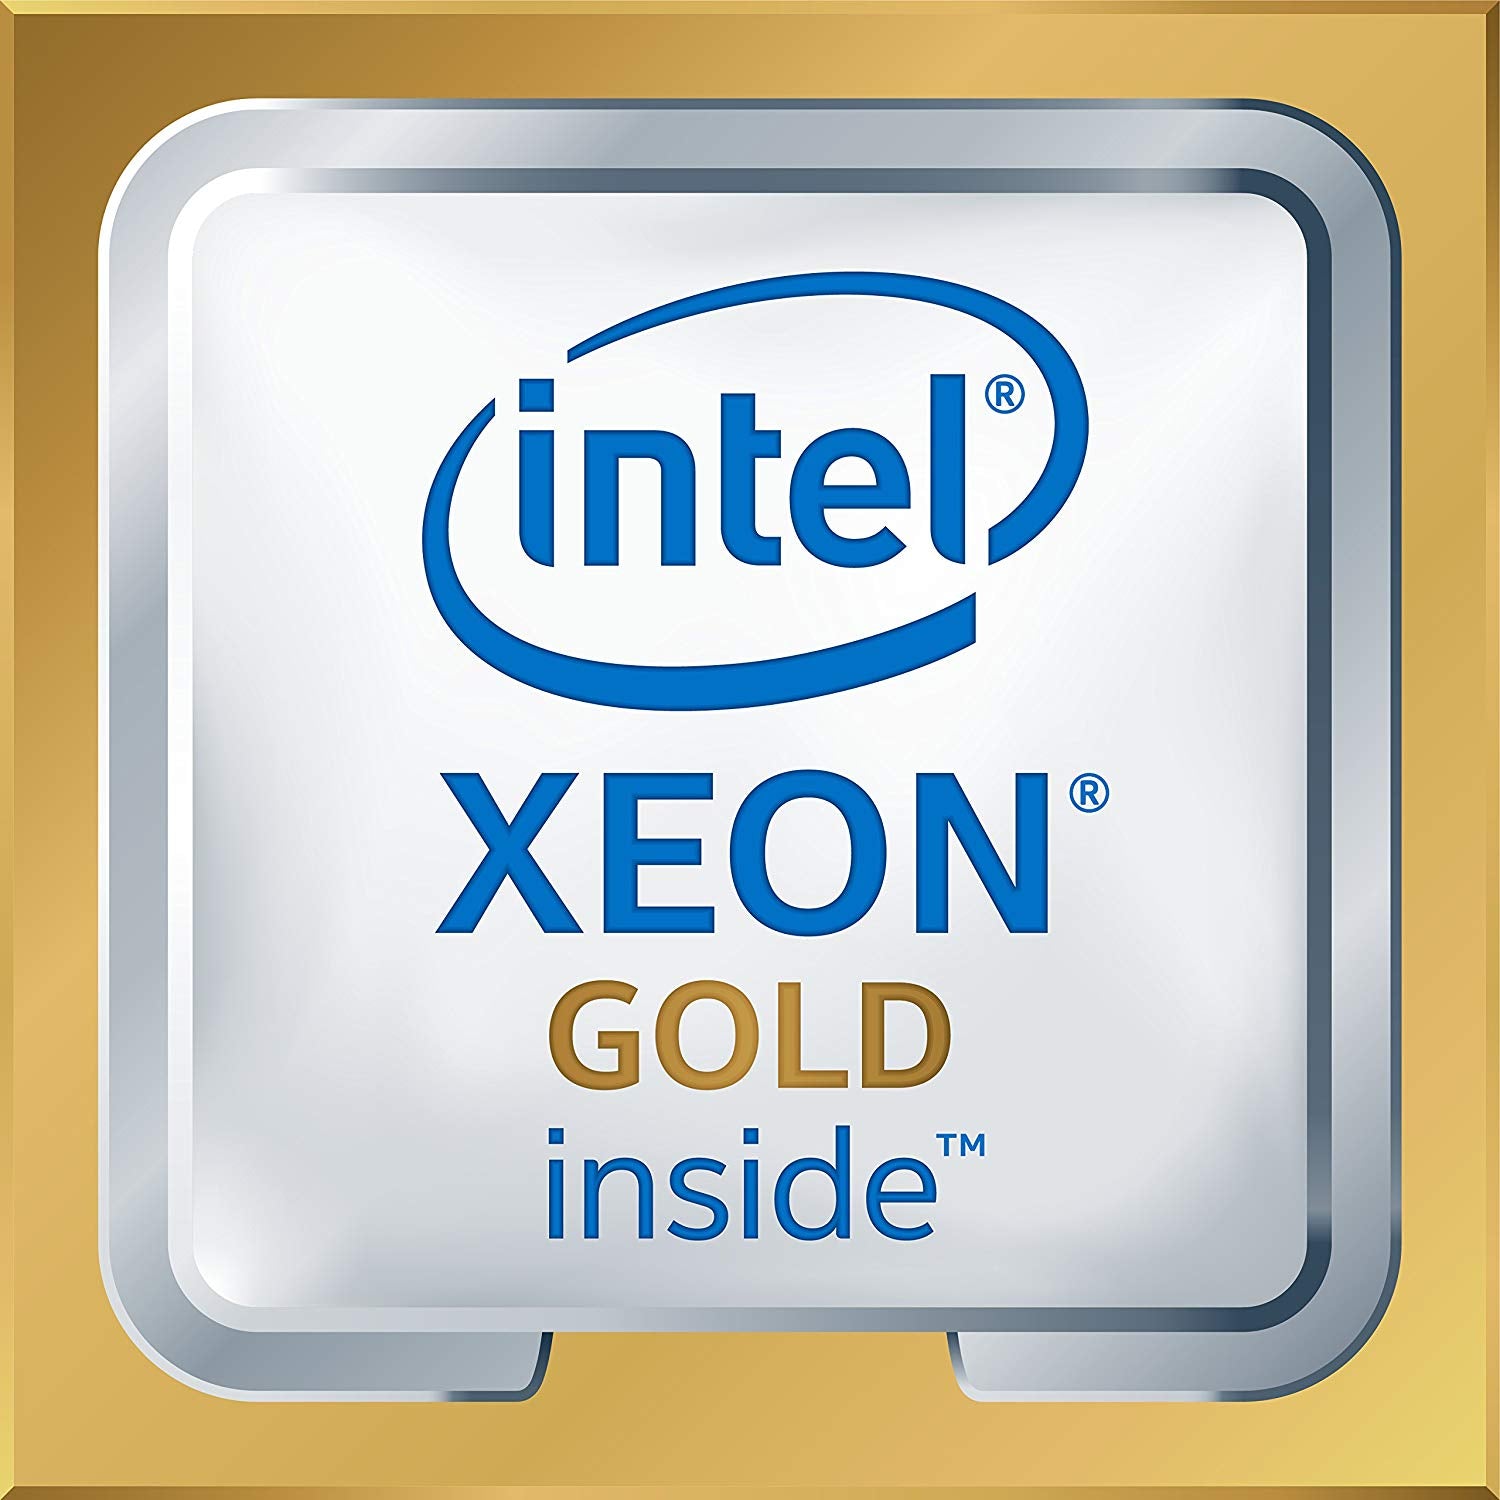 Intel Xeon Gold 6144 3.50GHz 24.75MB L3 Cache Socket 3647 Intel Xeon Octa-Core 8 Core (SR3TR) Server  Processor